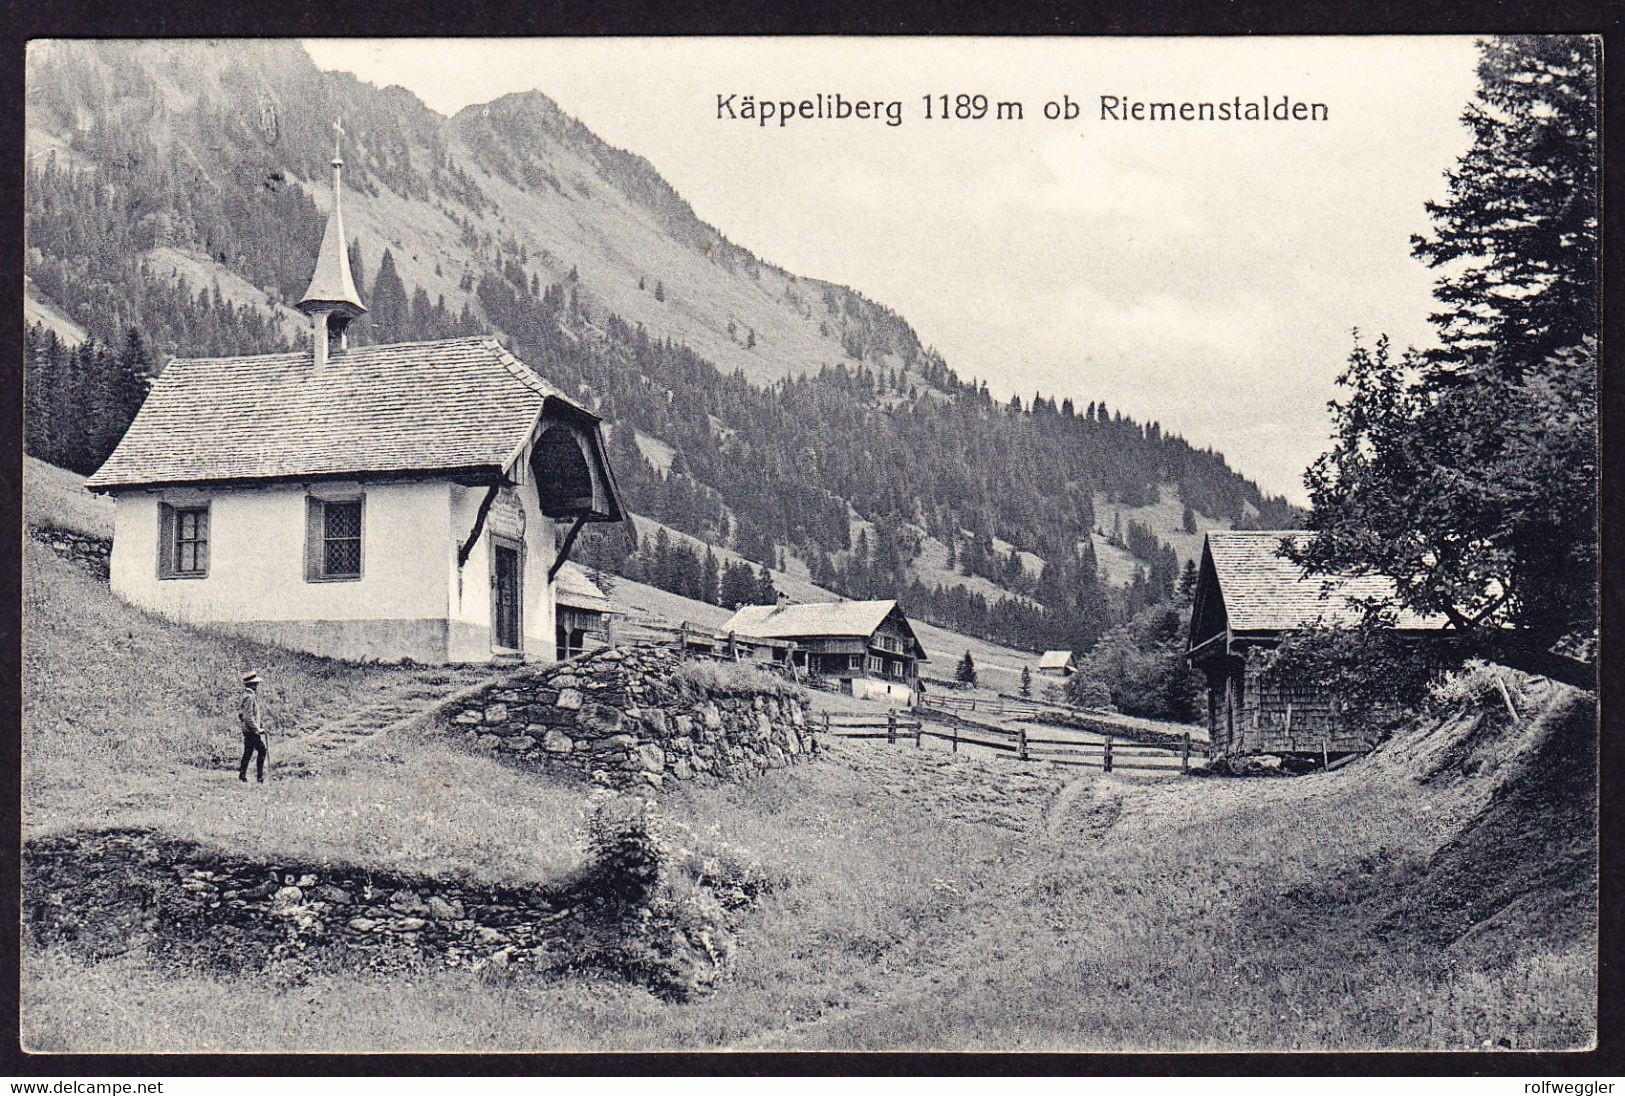 1917 Gelaufene AK: Käppeliberg Ob Riemenstalden, Gestempelt SISIKON Und RIEMENSTALDEN. Letztere Stabstempel - Riemenstalden